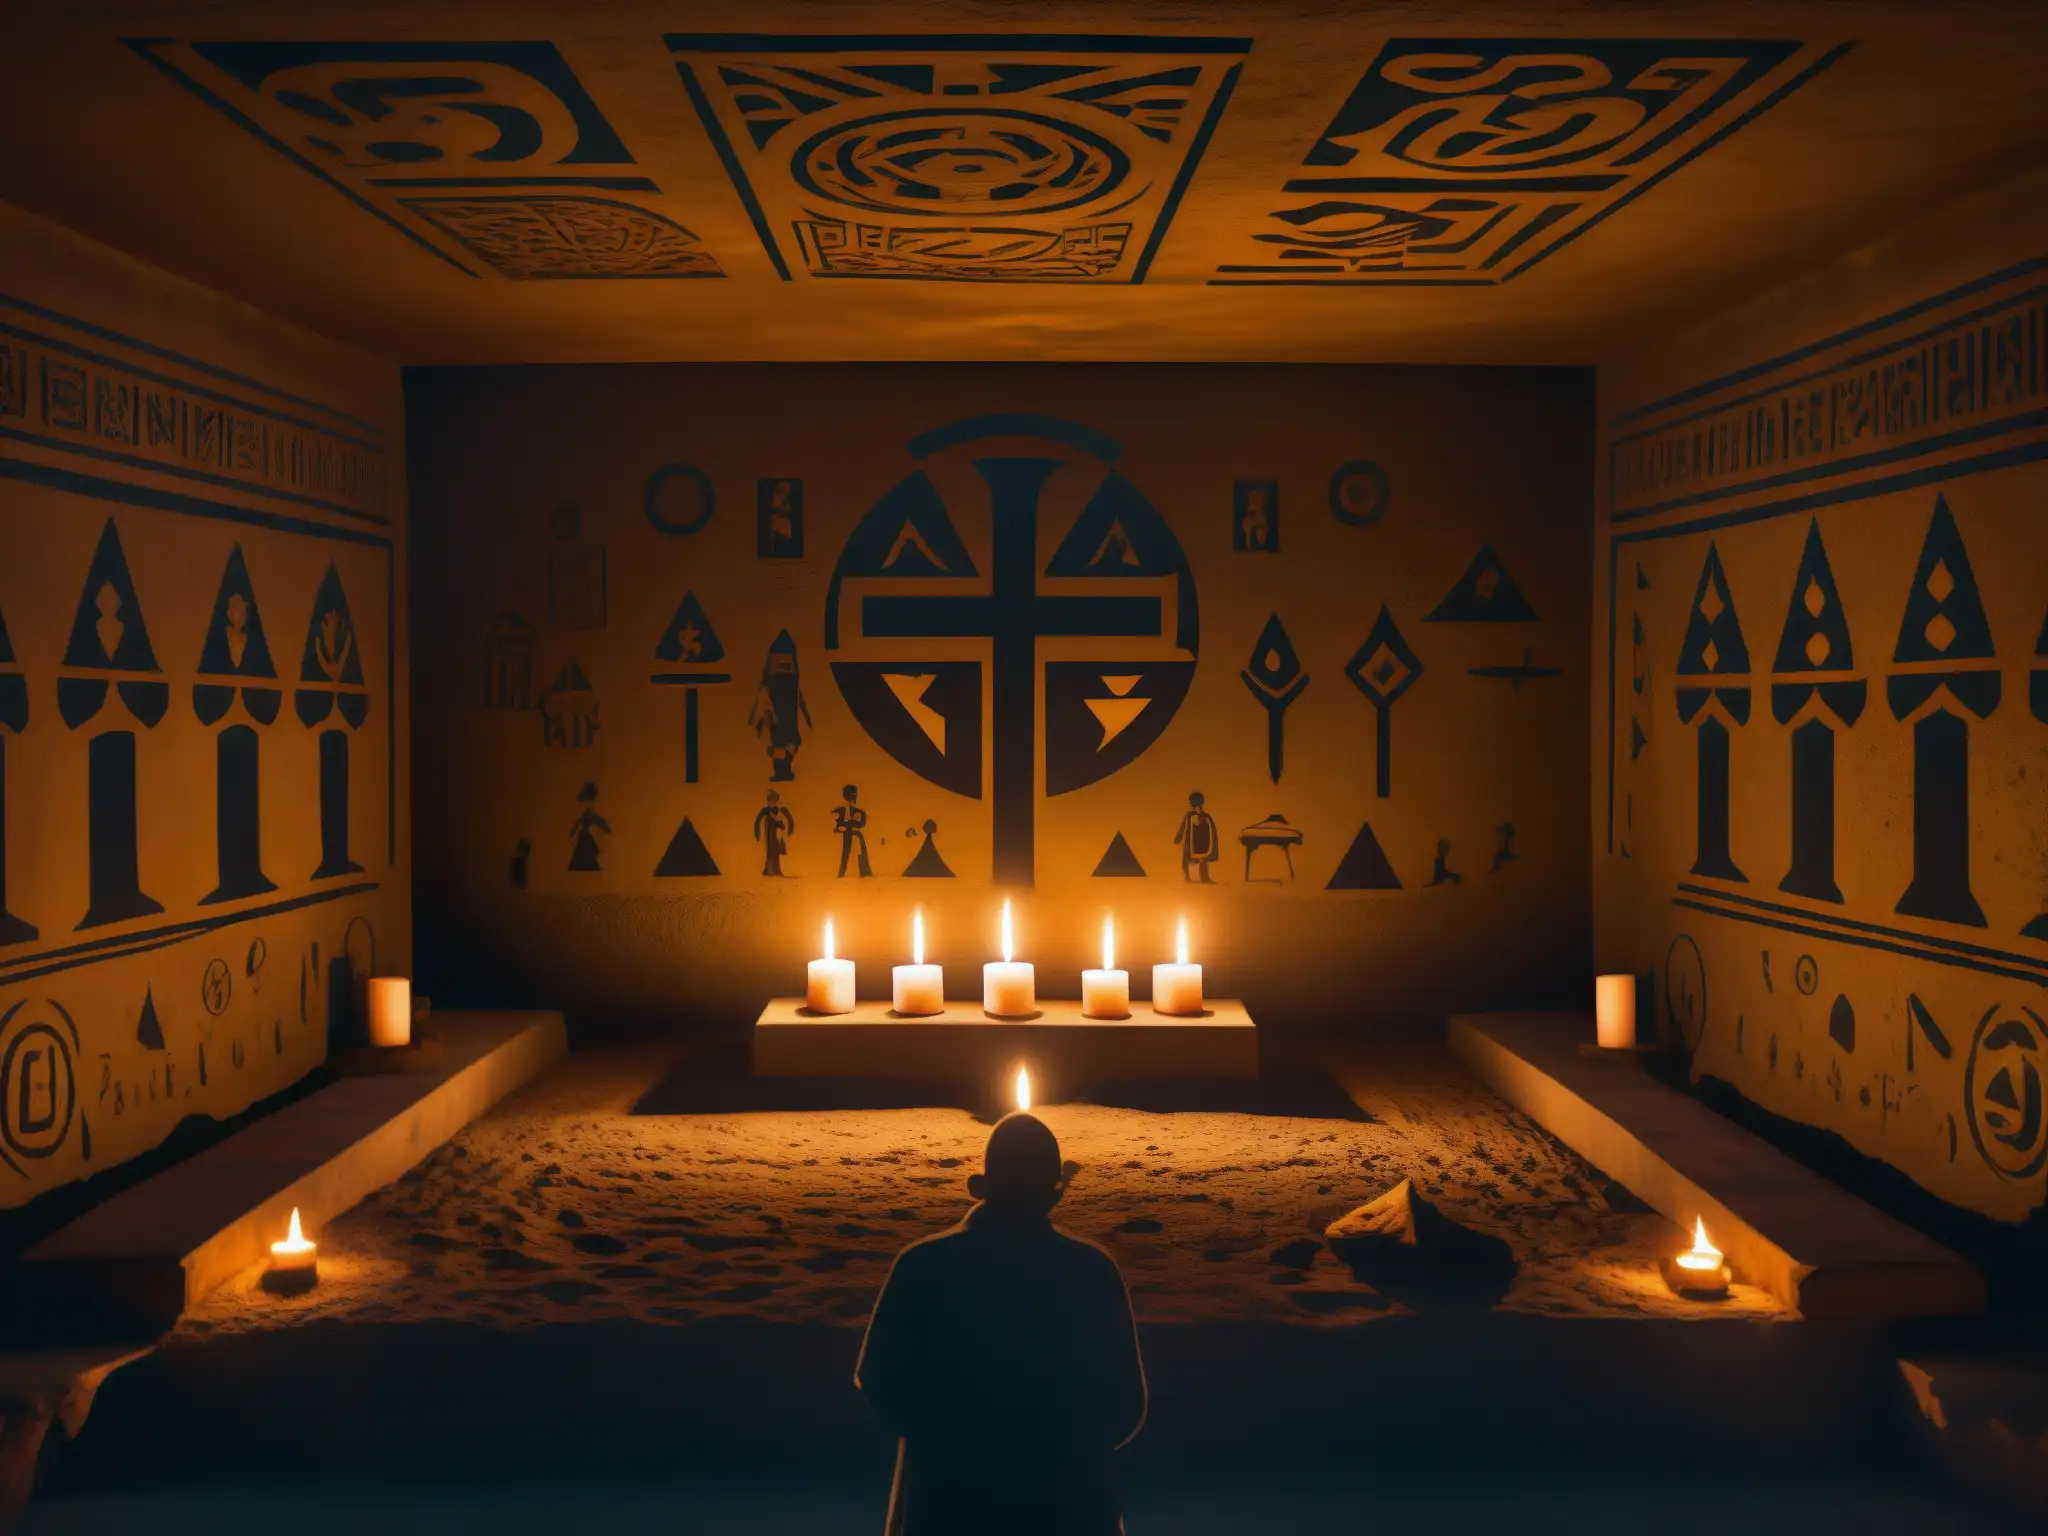 Rituales ocultistas élite en misteriosa cámara subterránea con símbolos y figuras en penumbra